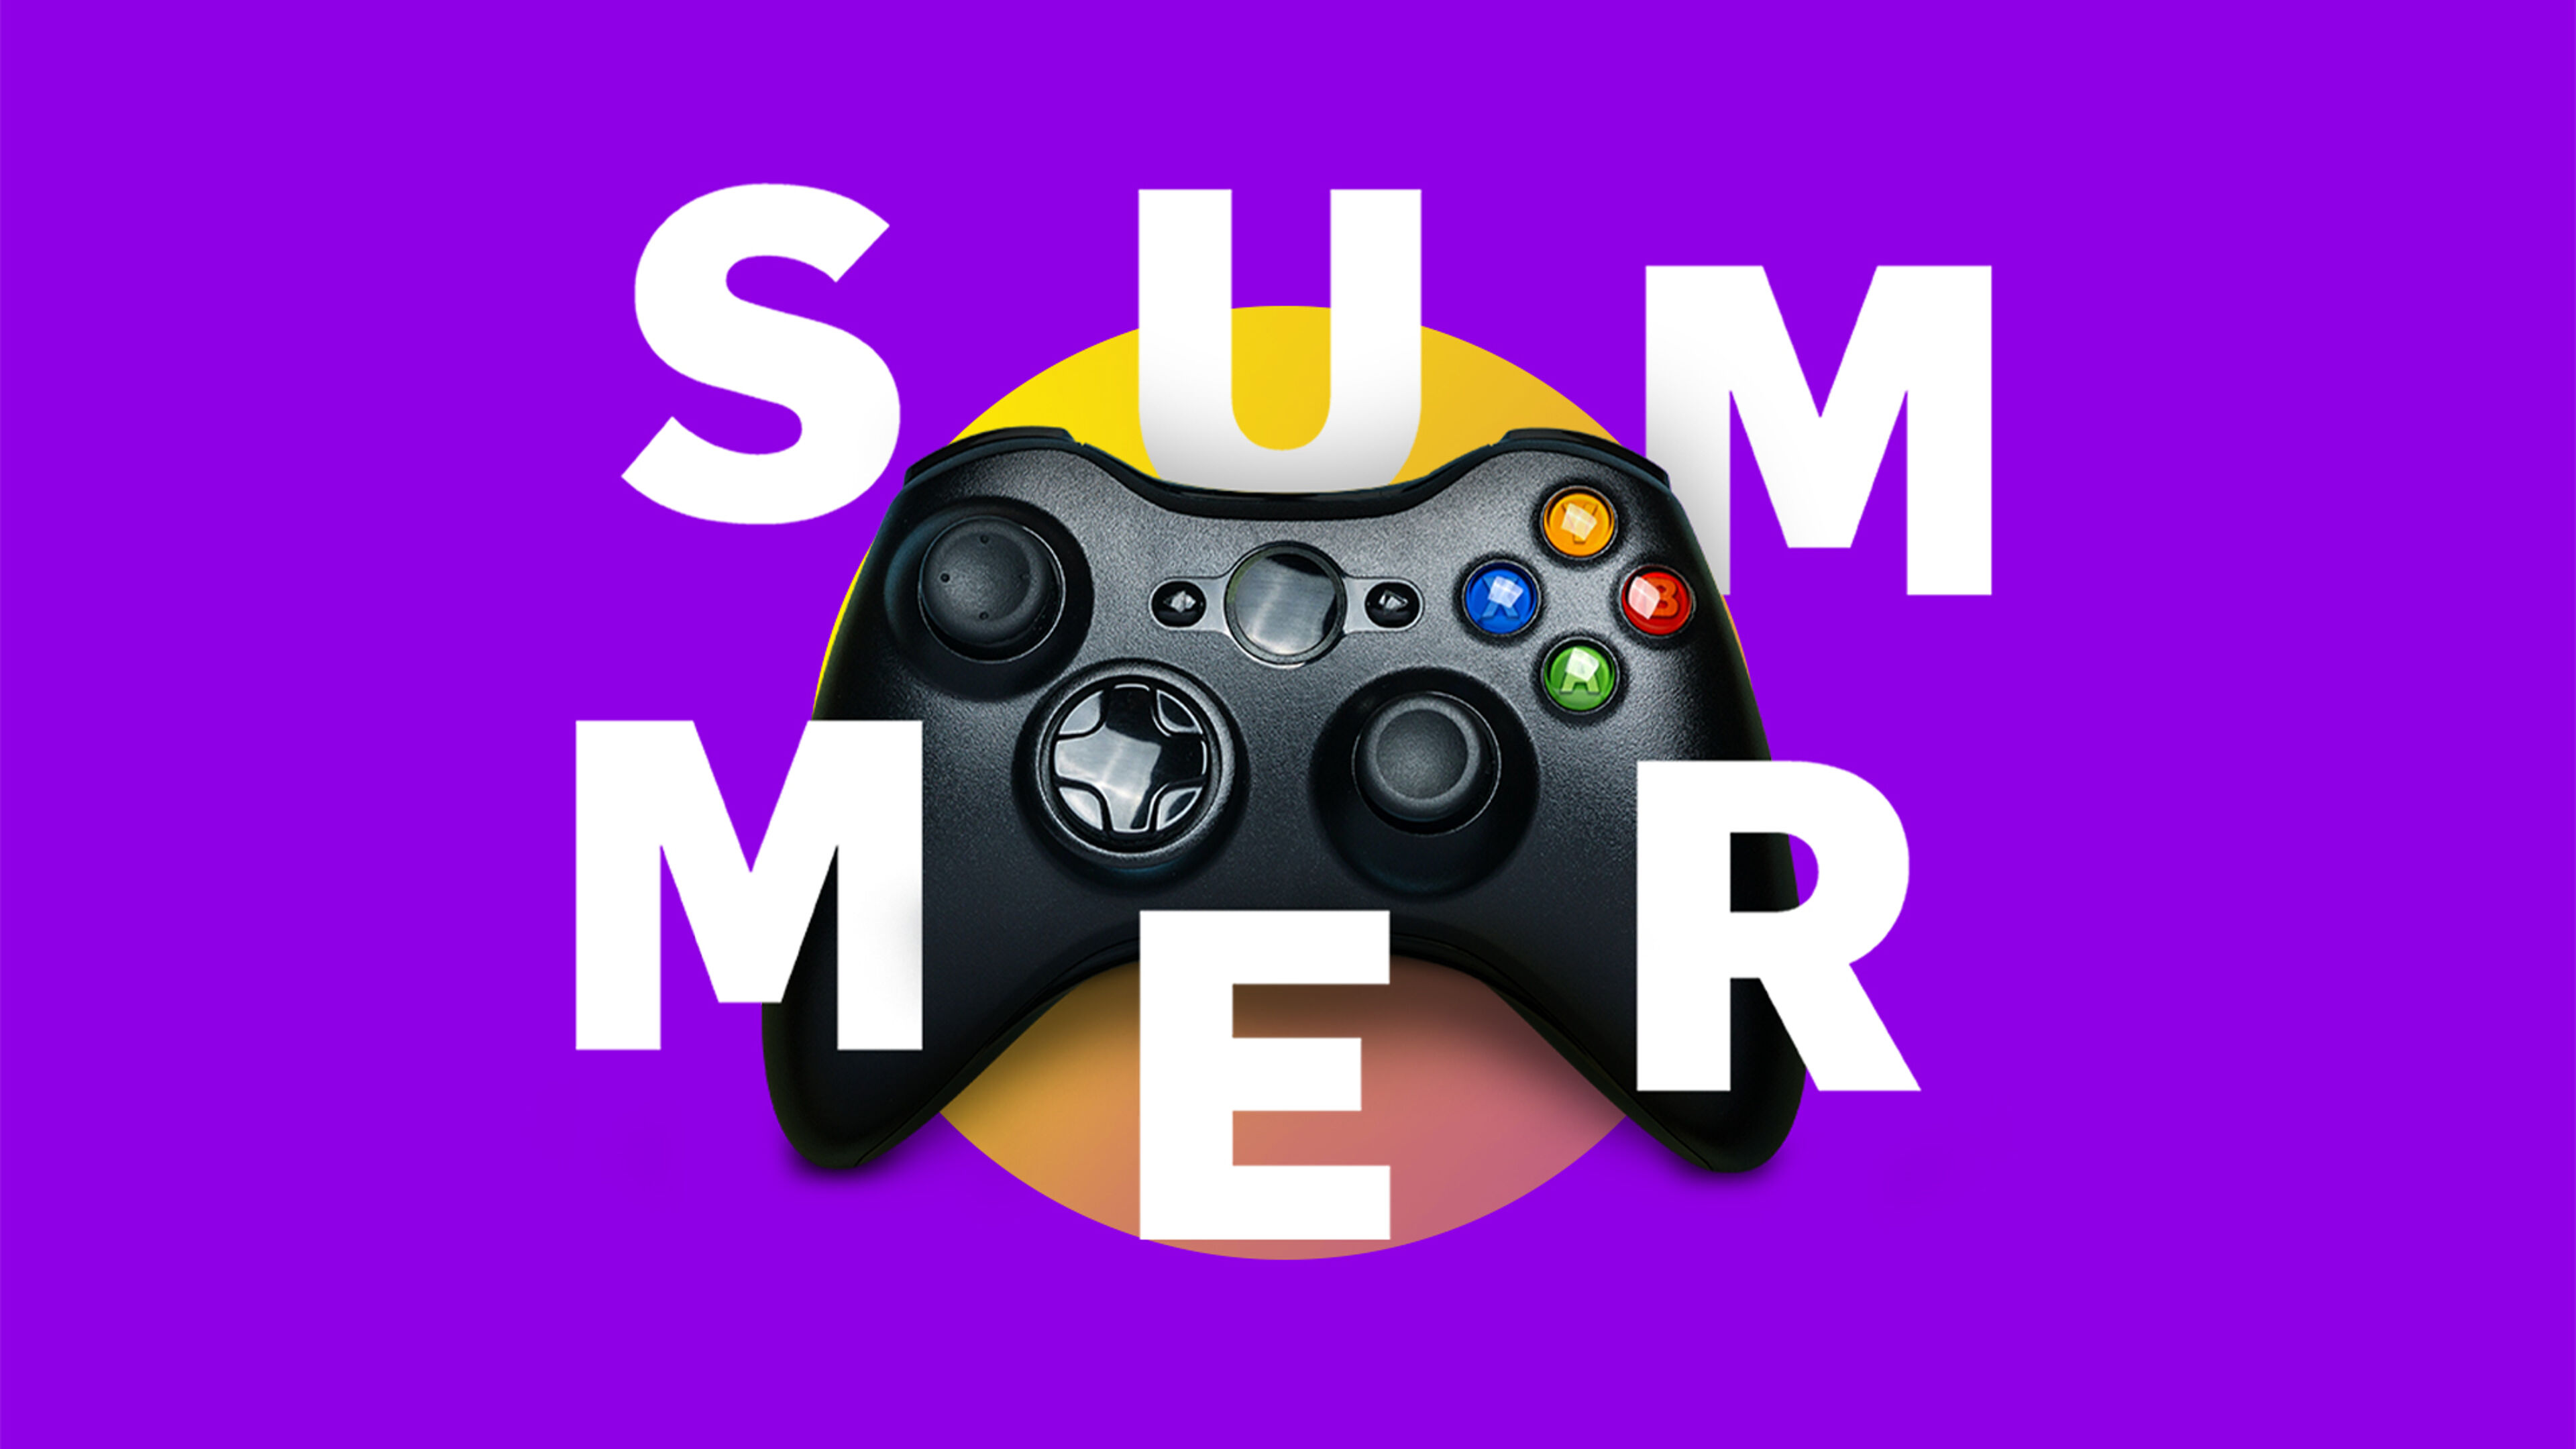 Gráfico temático de verano vibrante con un controlador de juegos centrado sobre un fondo morado.